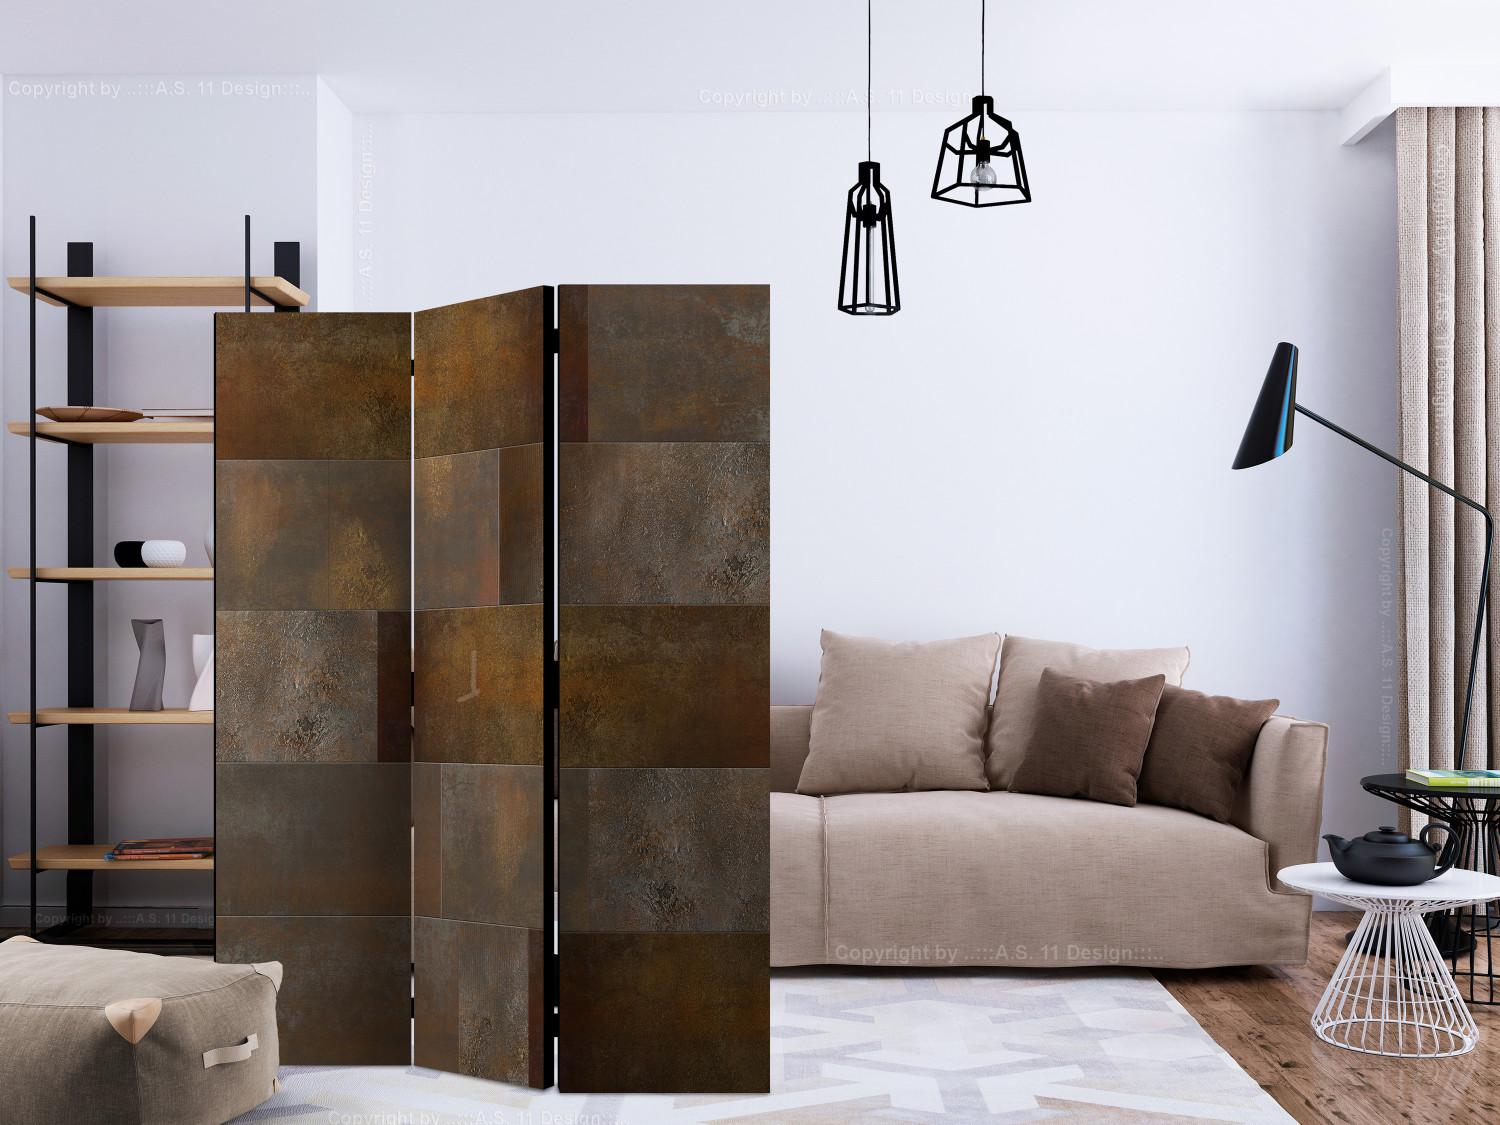 Biombo Cascada Dorada - textura de metal oxidado con azulejos cuadrados